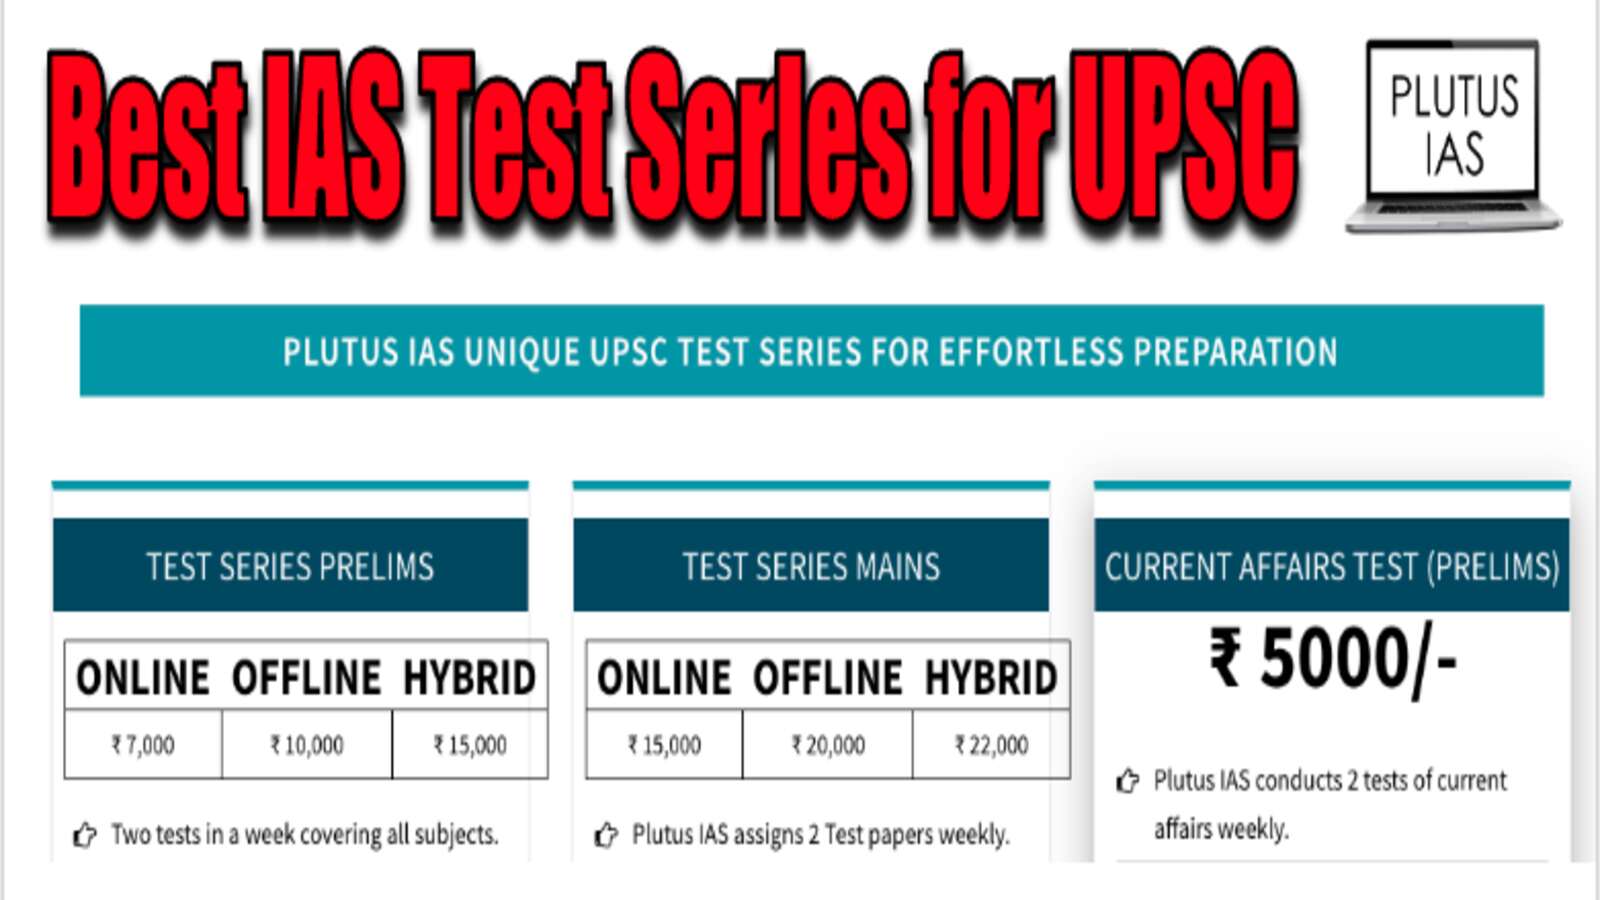 Plutus IAS Test series for UPSC